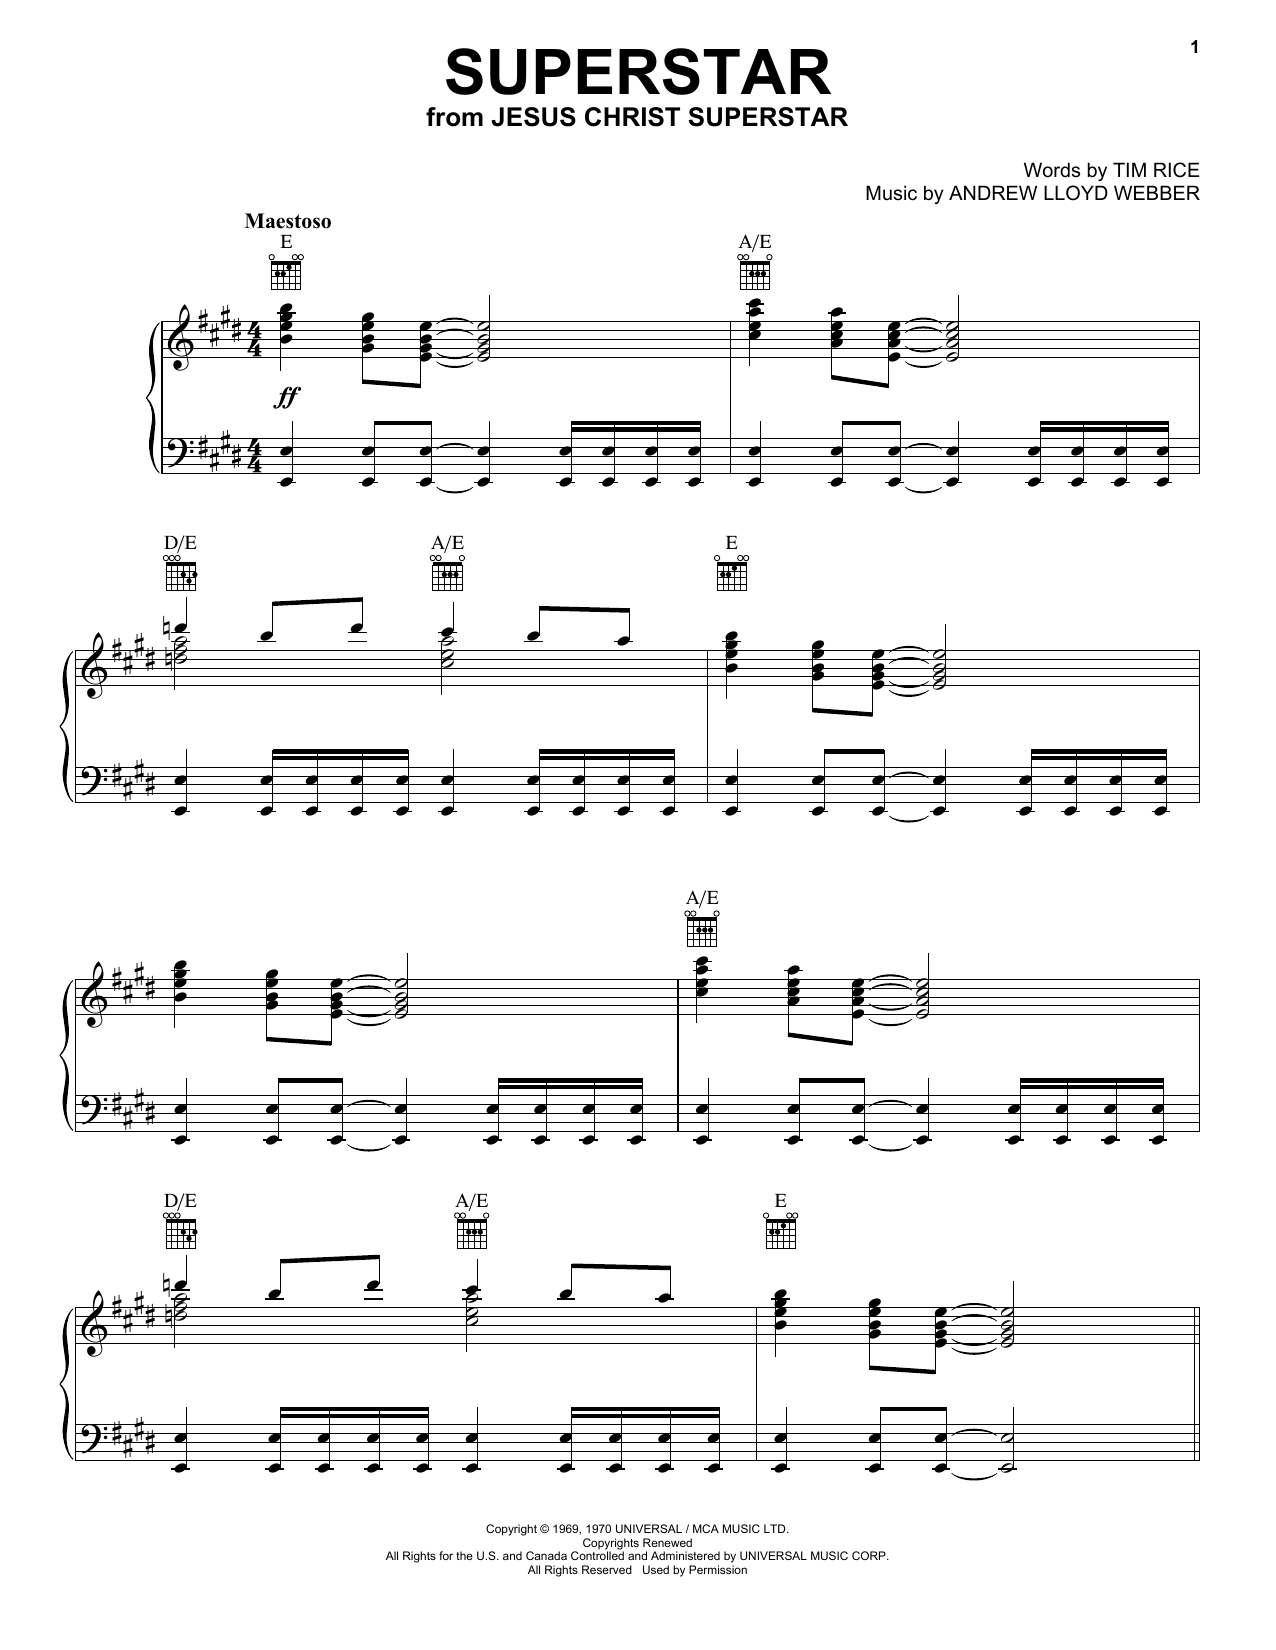 Andrew Lloyd Webber Superstar (from Jesus Christ Superstar) Sheet Music Notes & Chords for Viola - Download or Print PDF